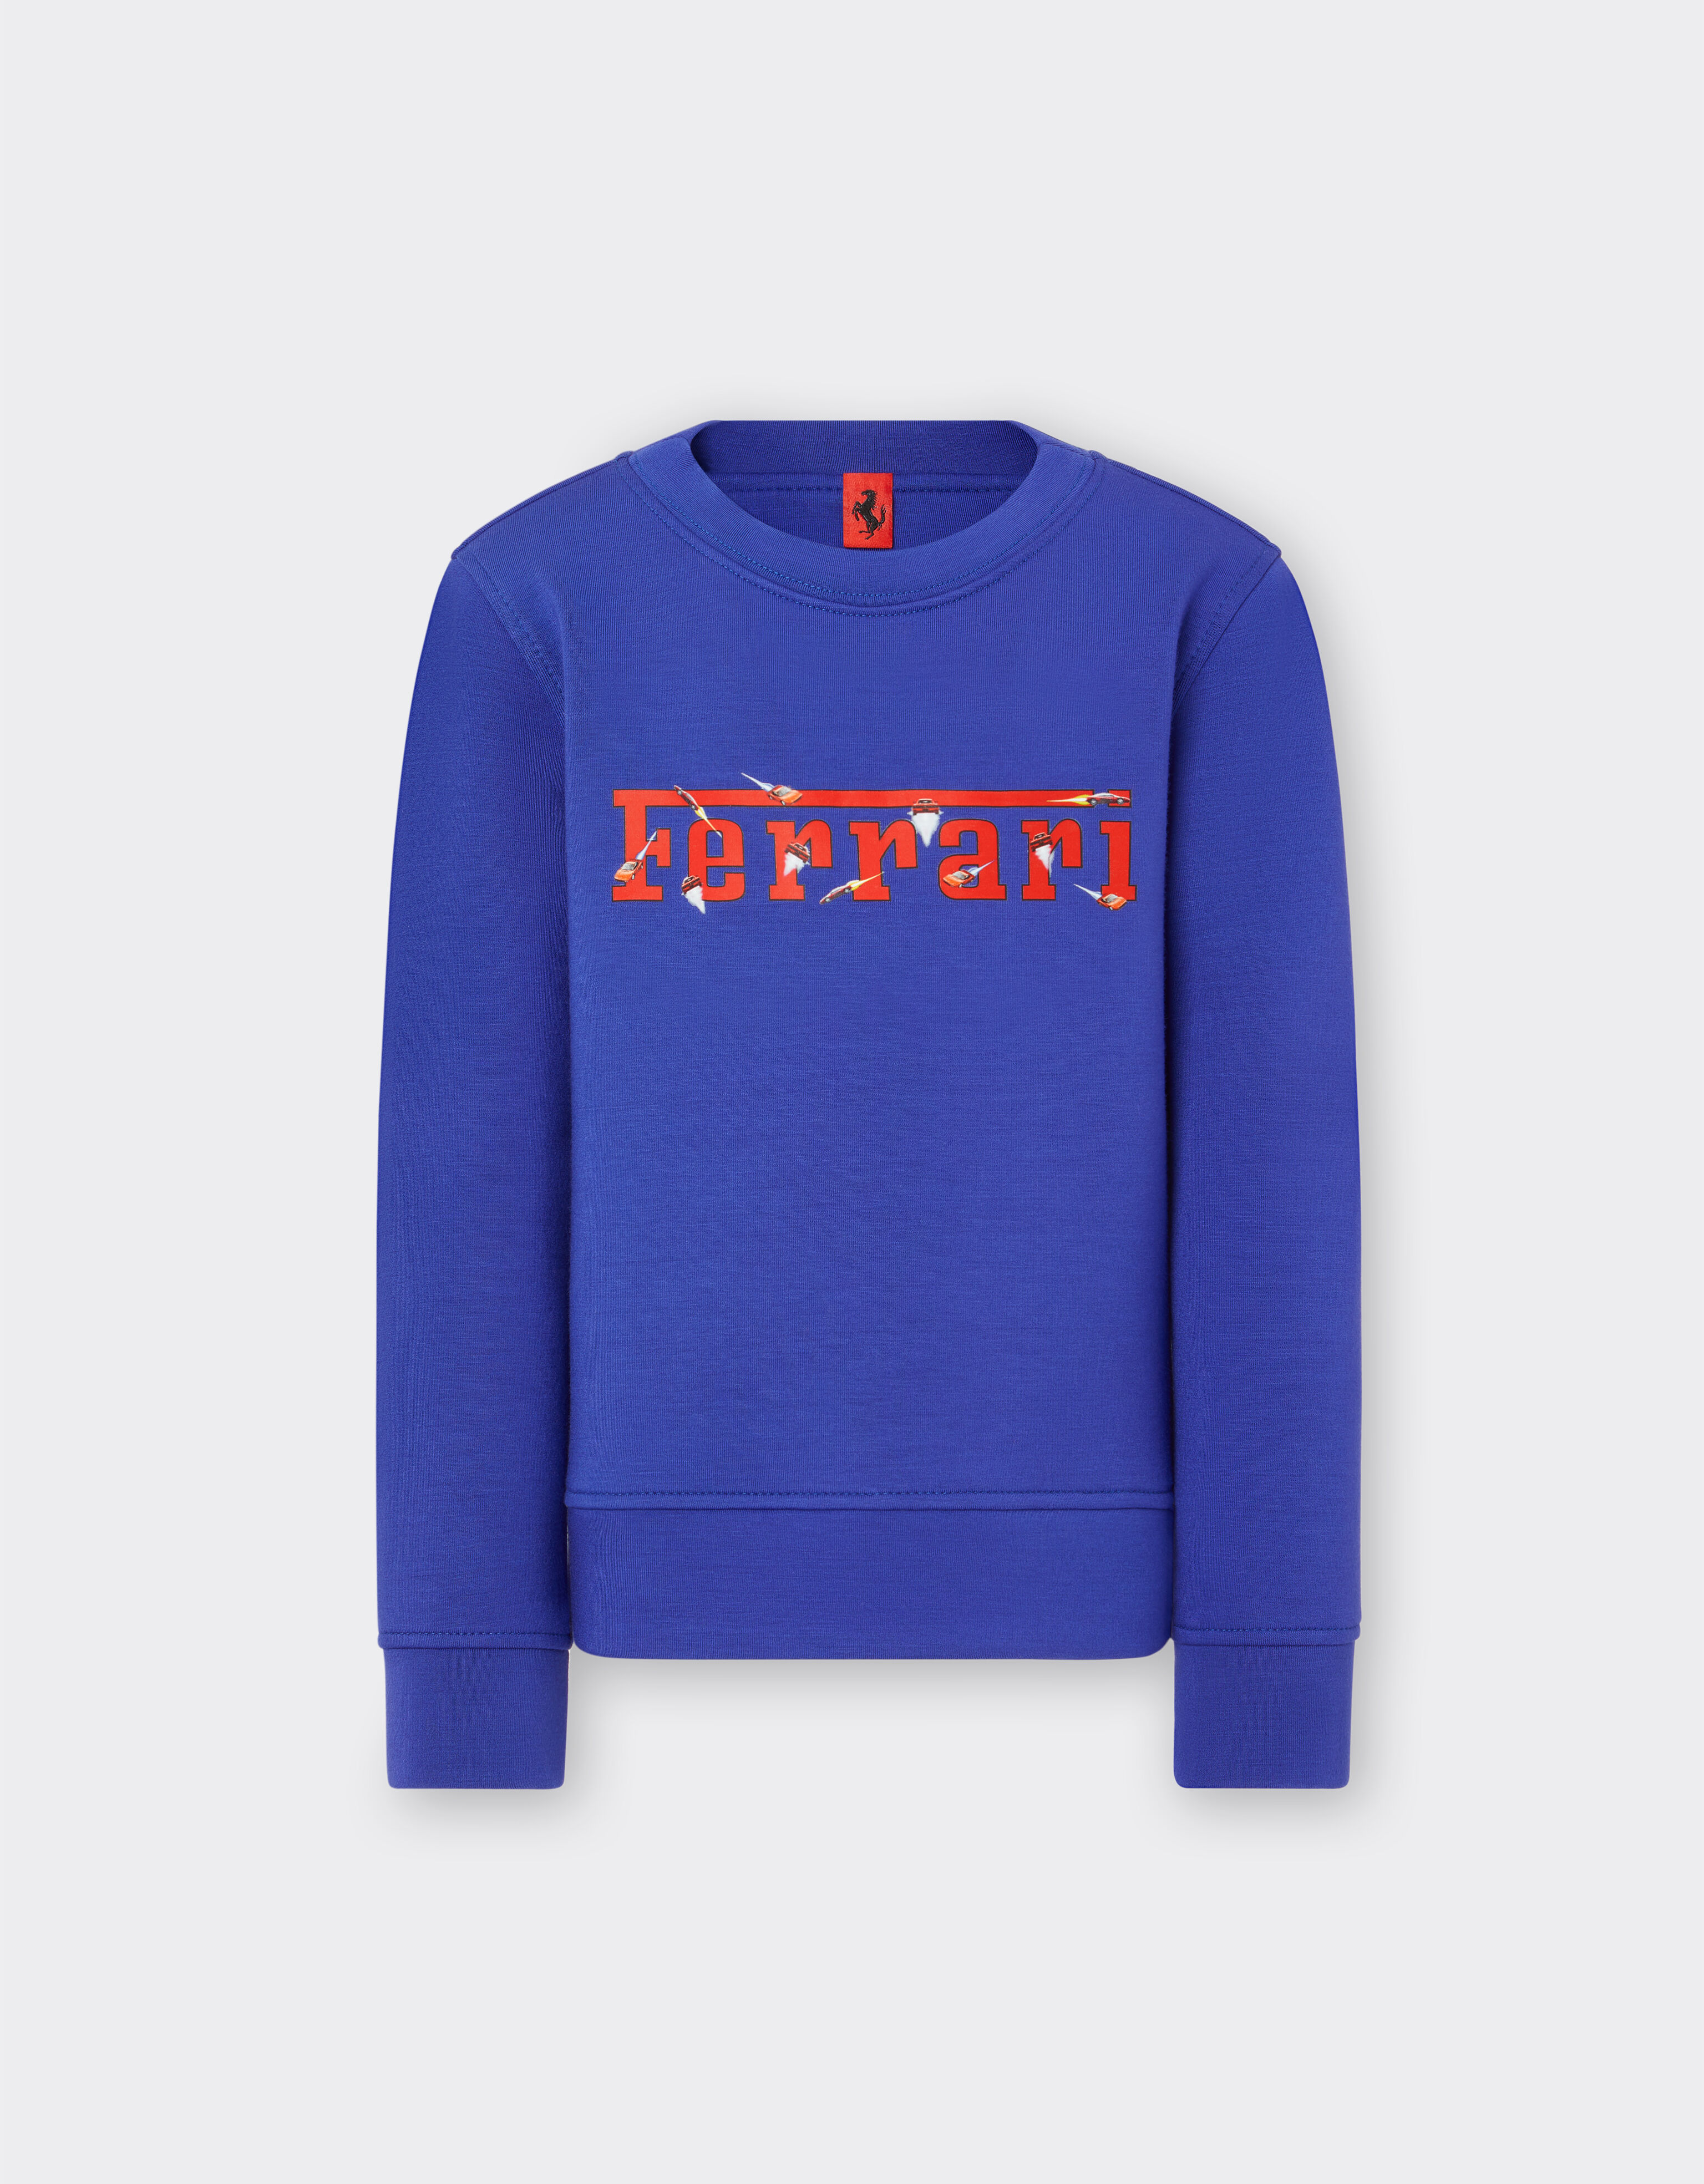 Ferrari Children’s scuba sweatshirt with Ferrari logo Antique Blue 20159fK